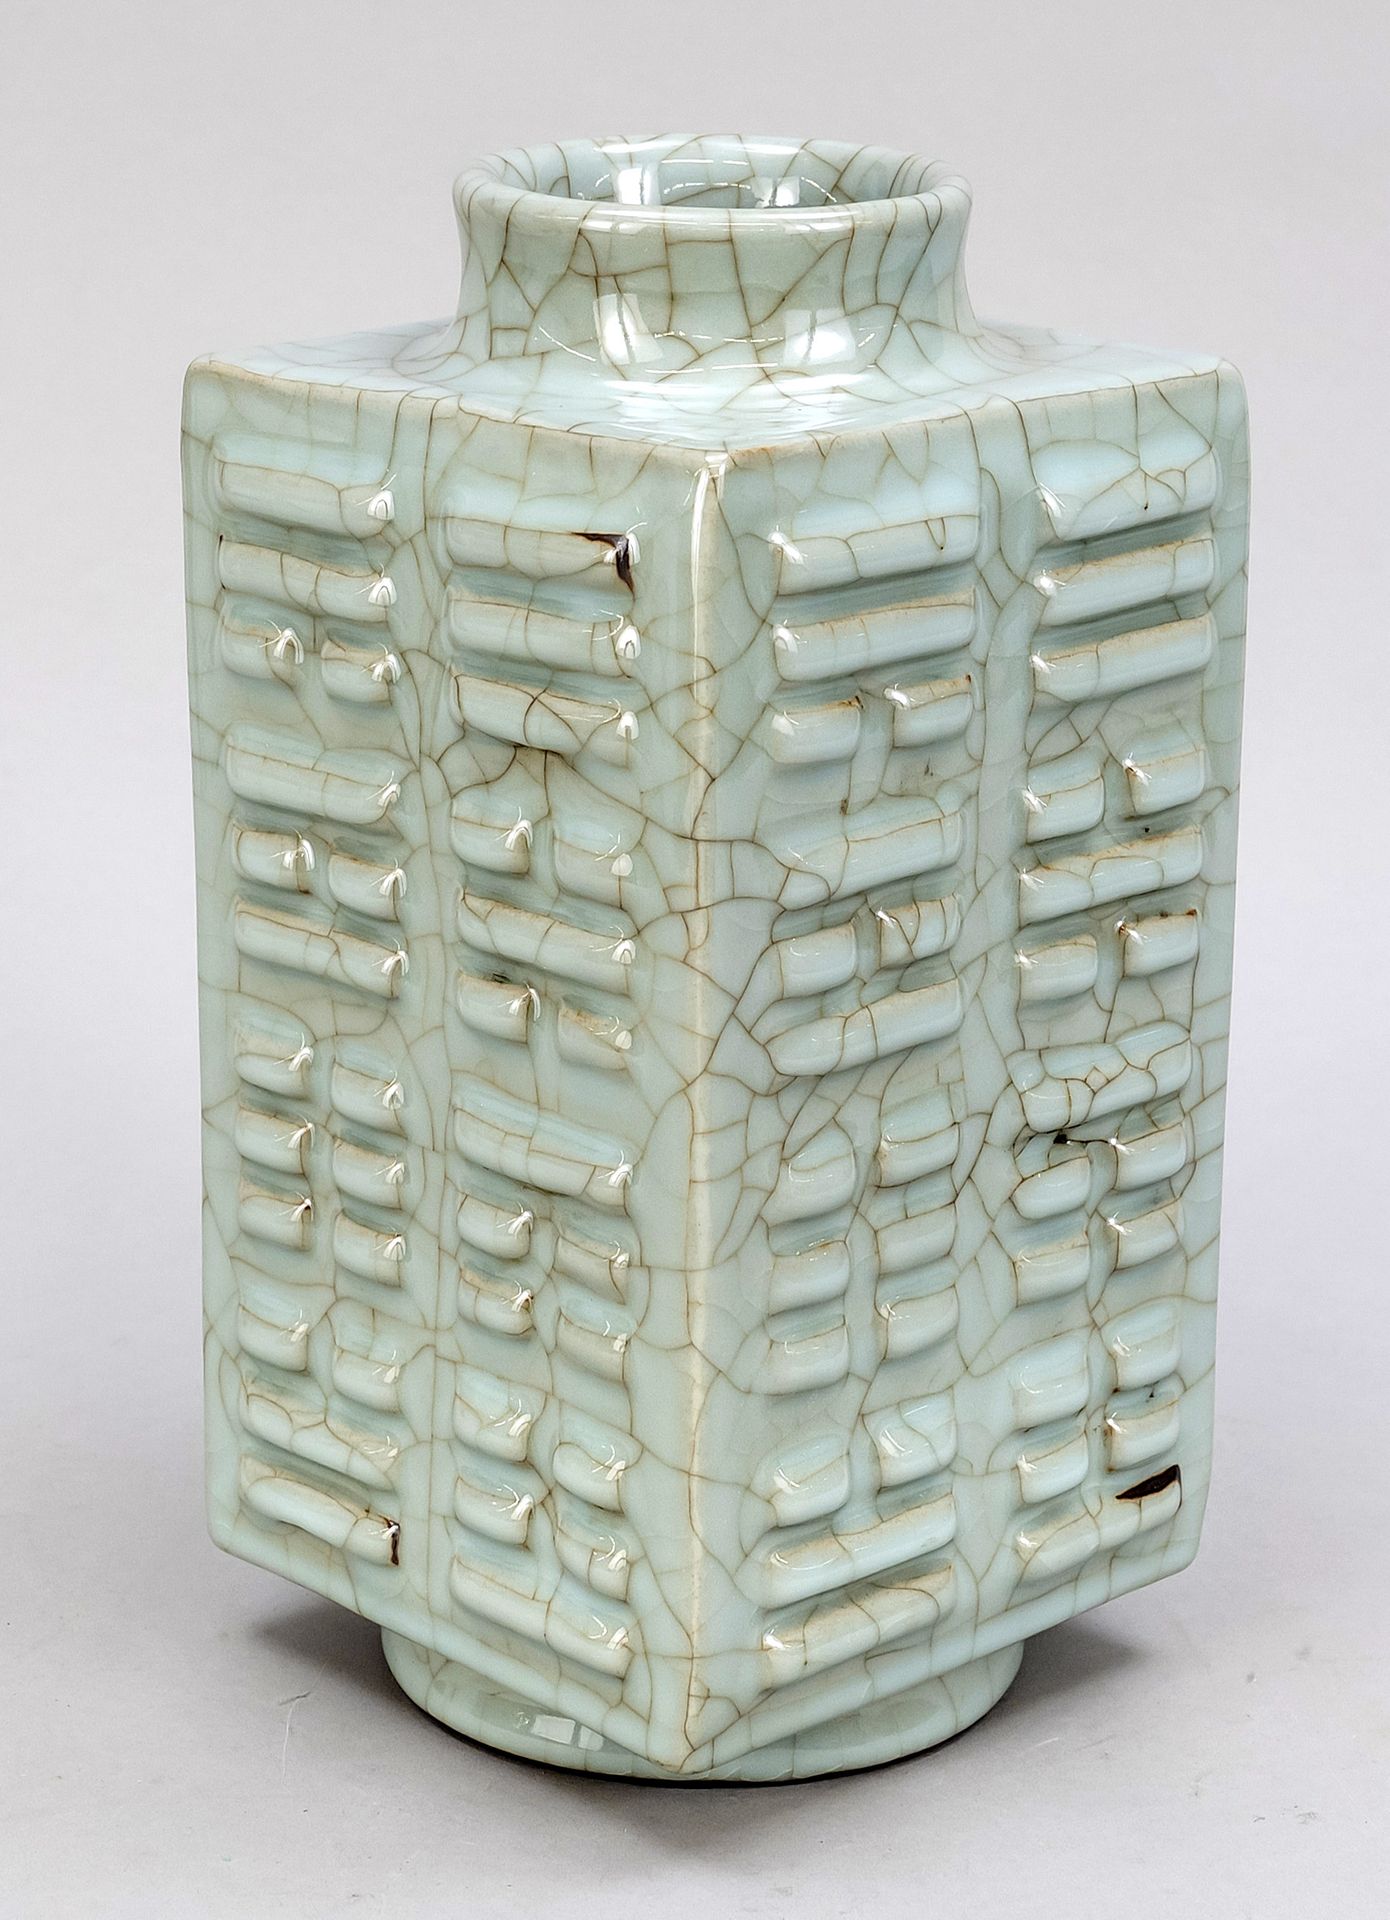 Null 琮式花瓶，葛釉，中国，20世纪，浮雕装饰有八卦图，釉面有网状裂纹，底座下有钴蓝色乾隆印记，高29厘米